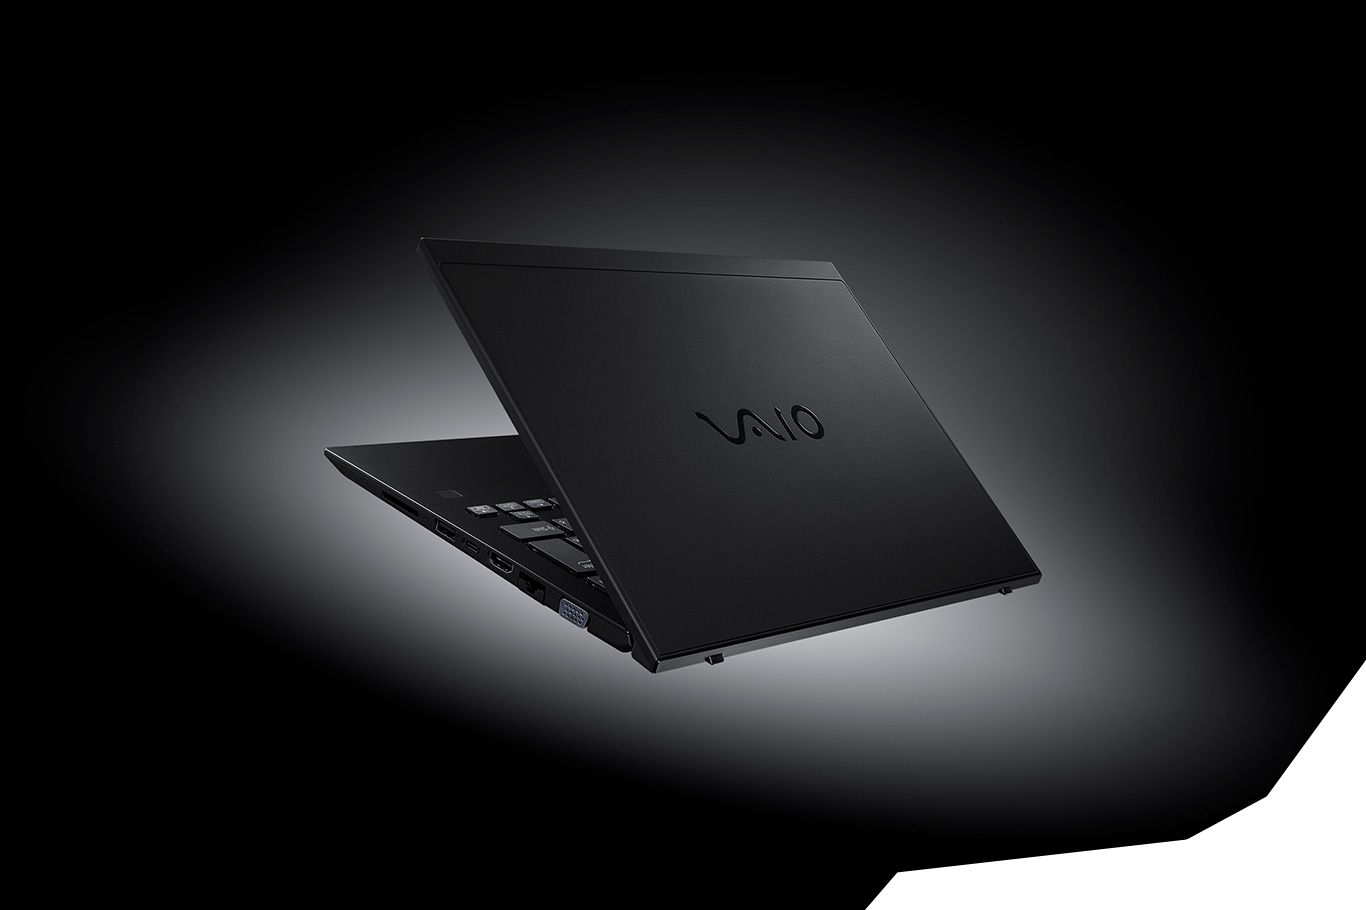 VAIO SX14 ALL BLACK EDITION 『黒』と『高性能』へのこだわりをさらに 